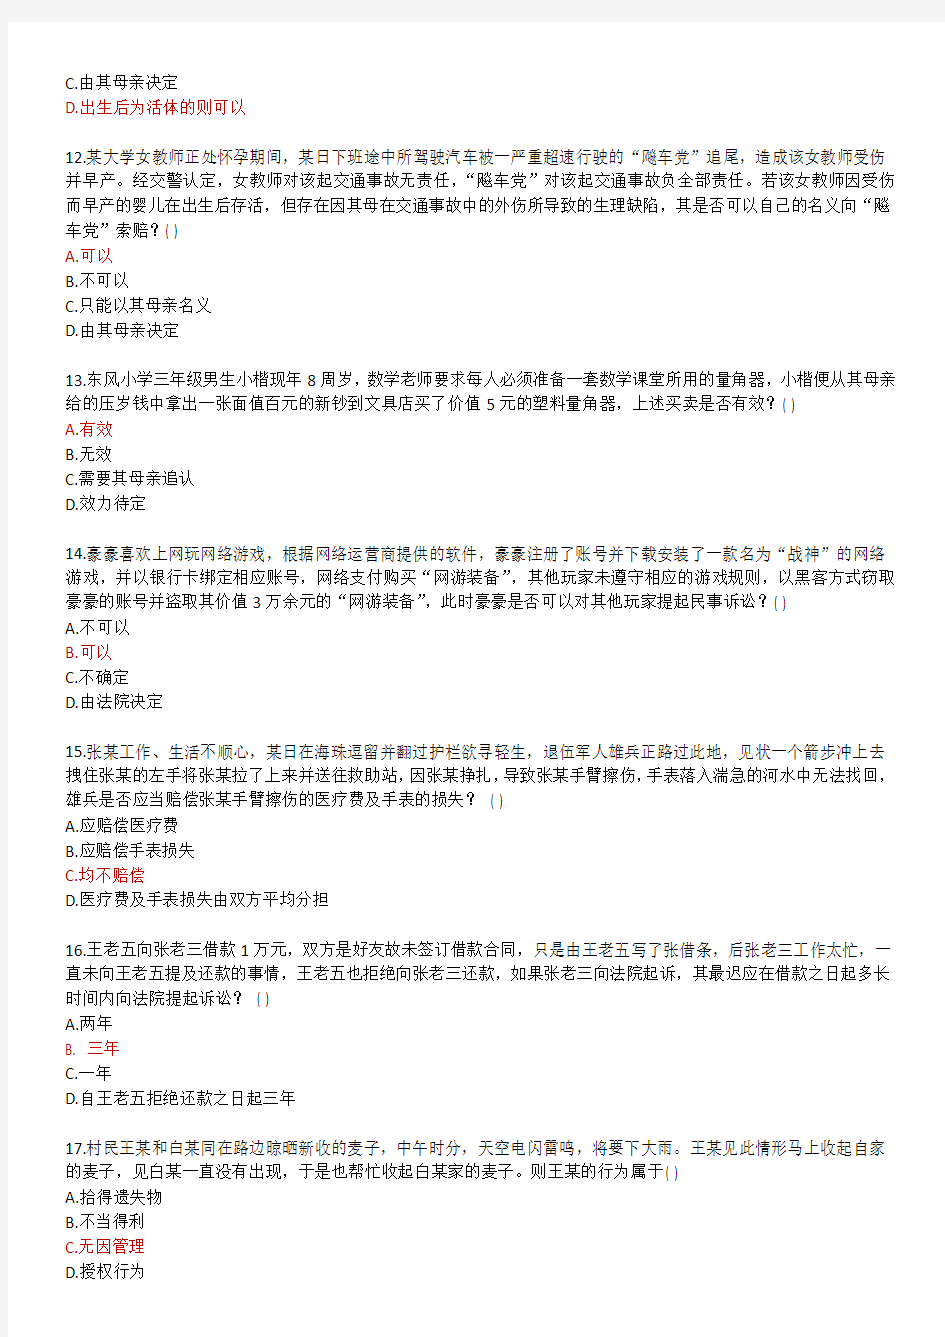 17年广州市统一学法考试平台(单选、多选、判断)答案 - 副本